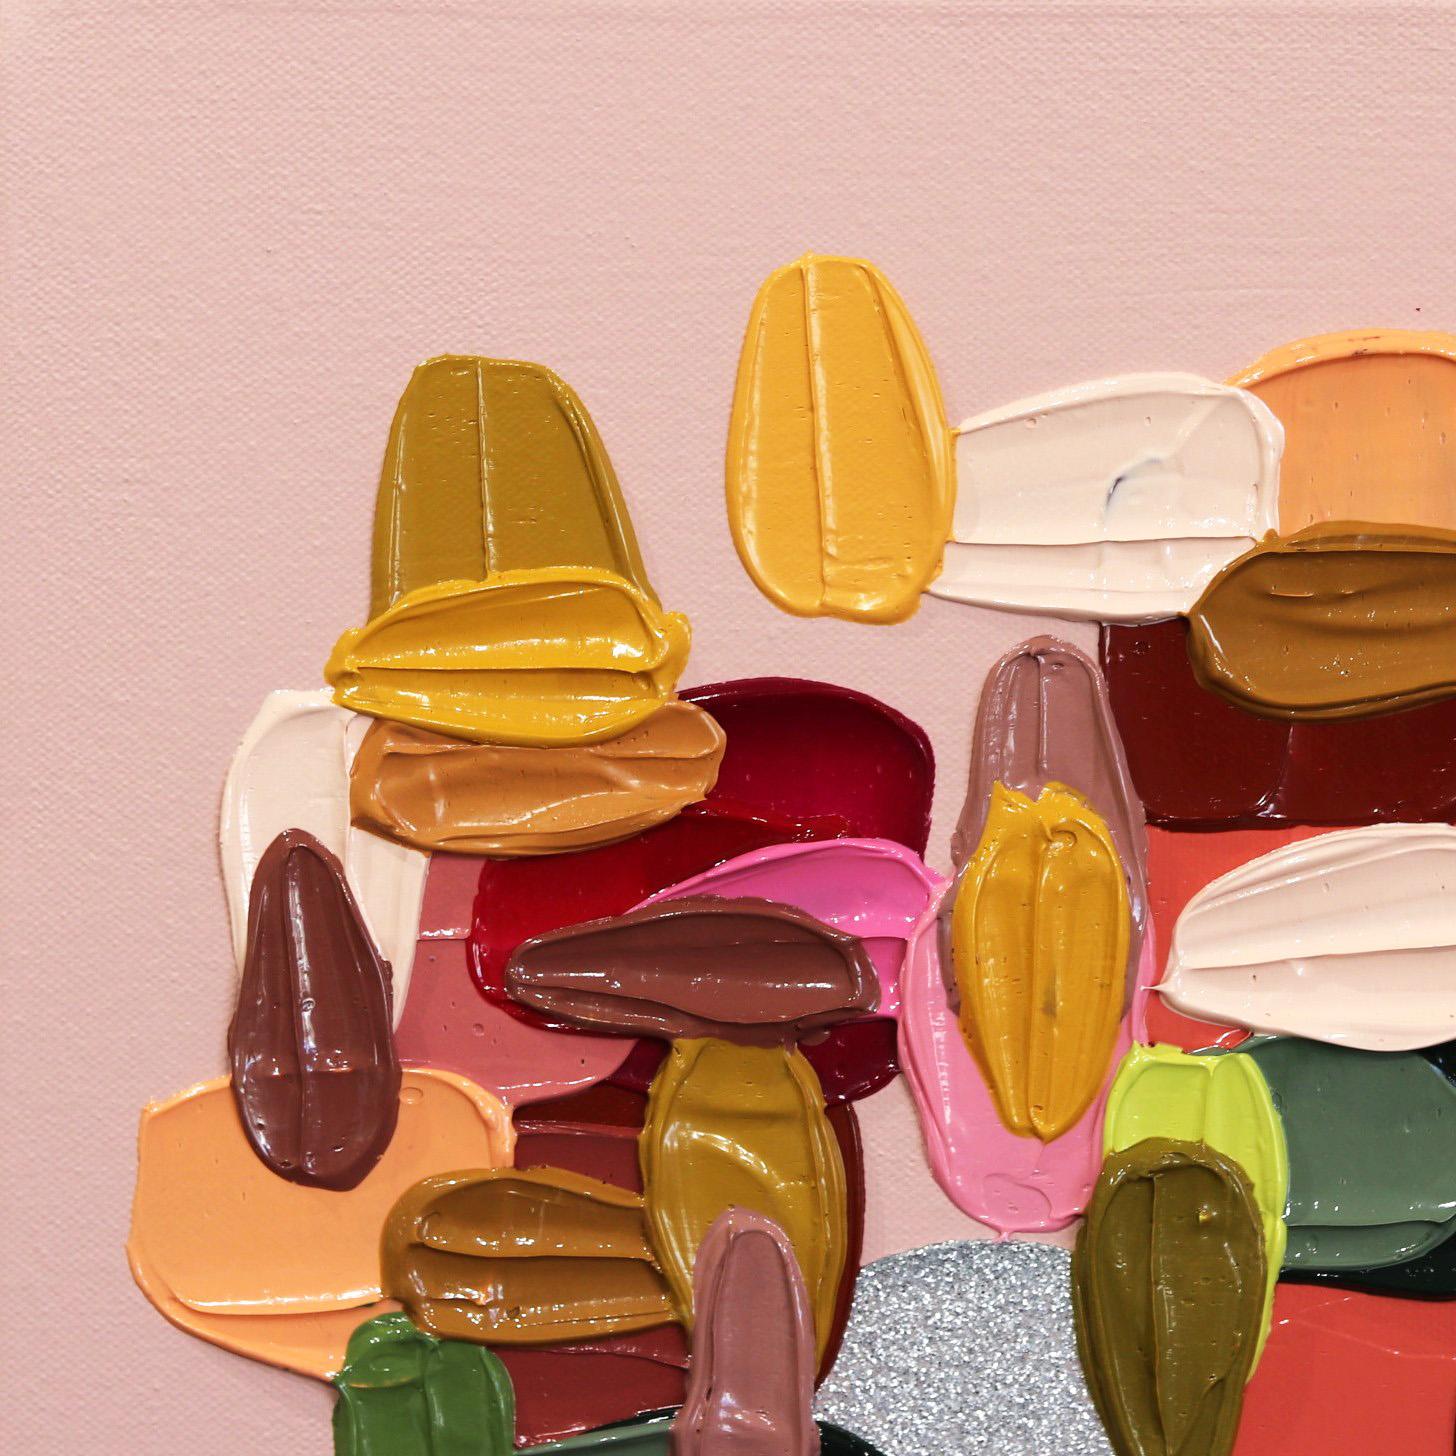 Des touches de couleurs vives peintes par empâtement constituent la trame des œuvres d'art abstraites de l'artiste Shiri Phillips. Ses peintures sont inondées de texture grâce à la superposition de la peinture acrylique en coups de pinceau fluides.